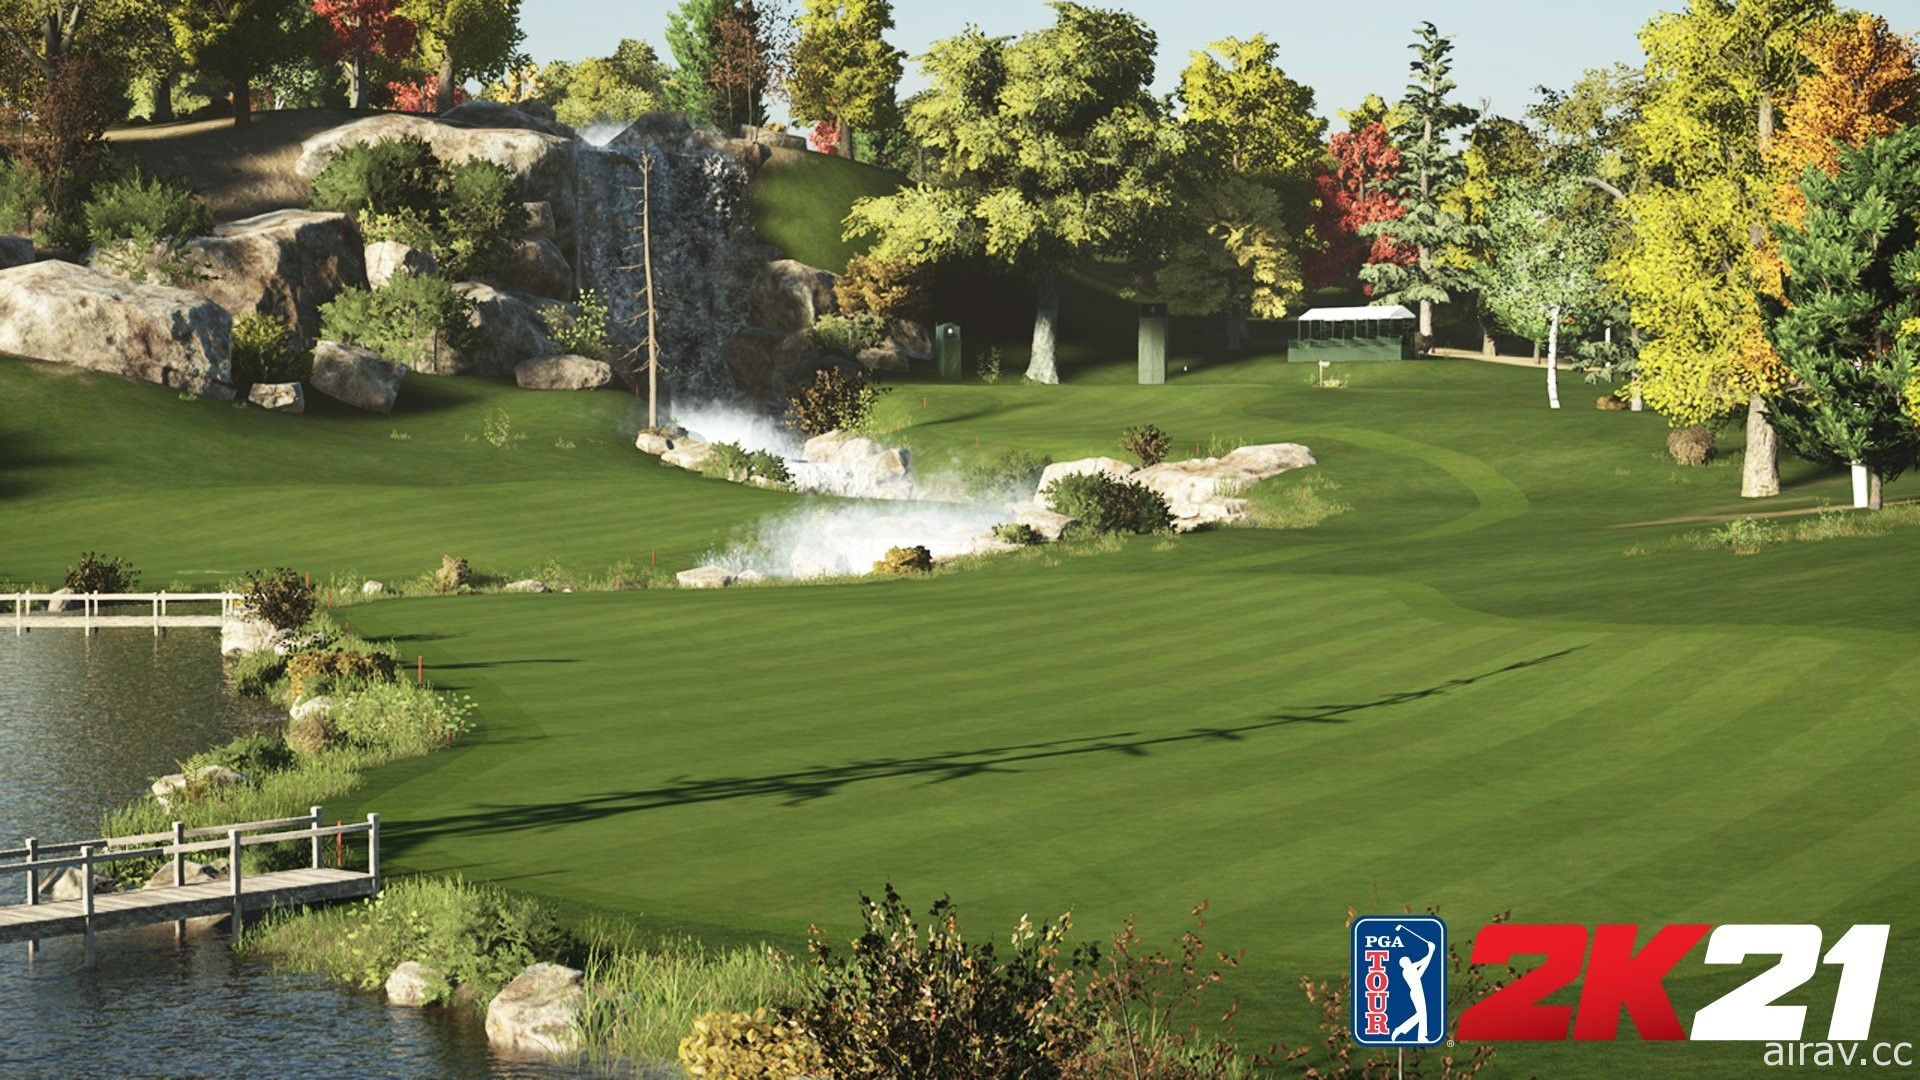 《PGA 巡回赛 2K21》征召社群球场创造者来增进多人游戏体验